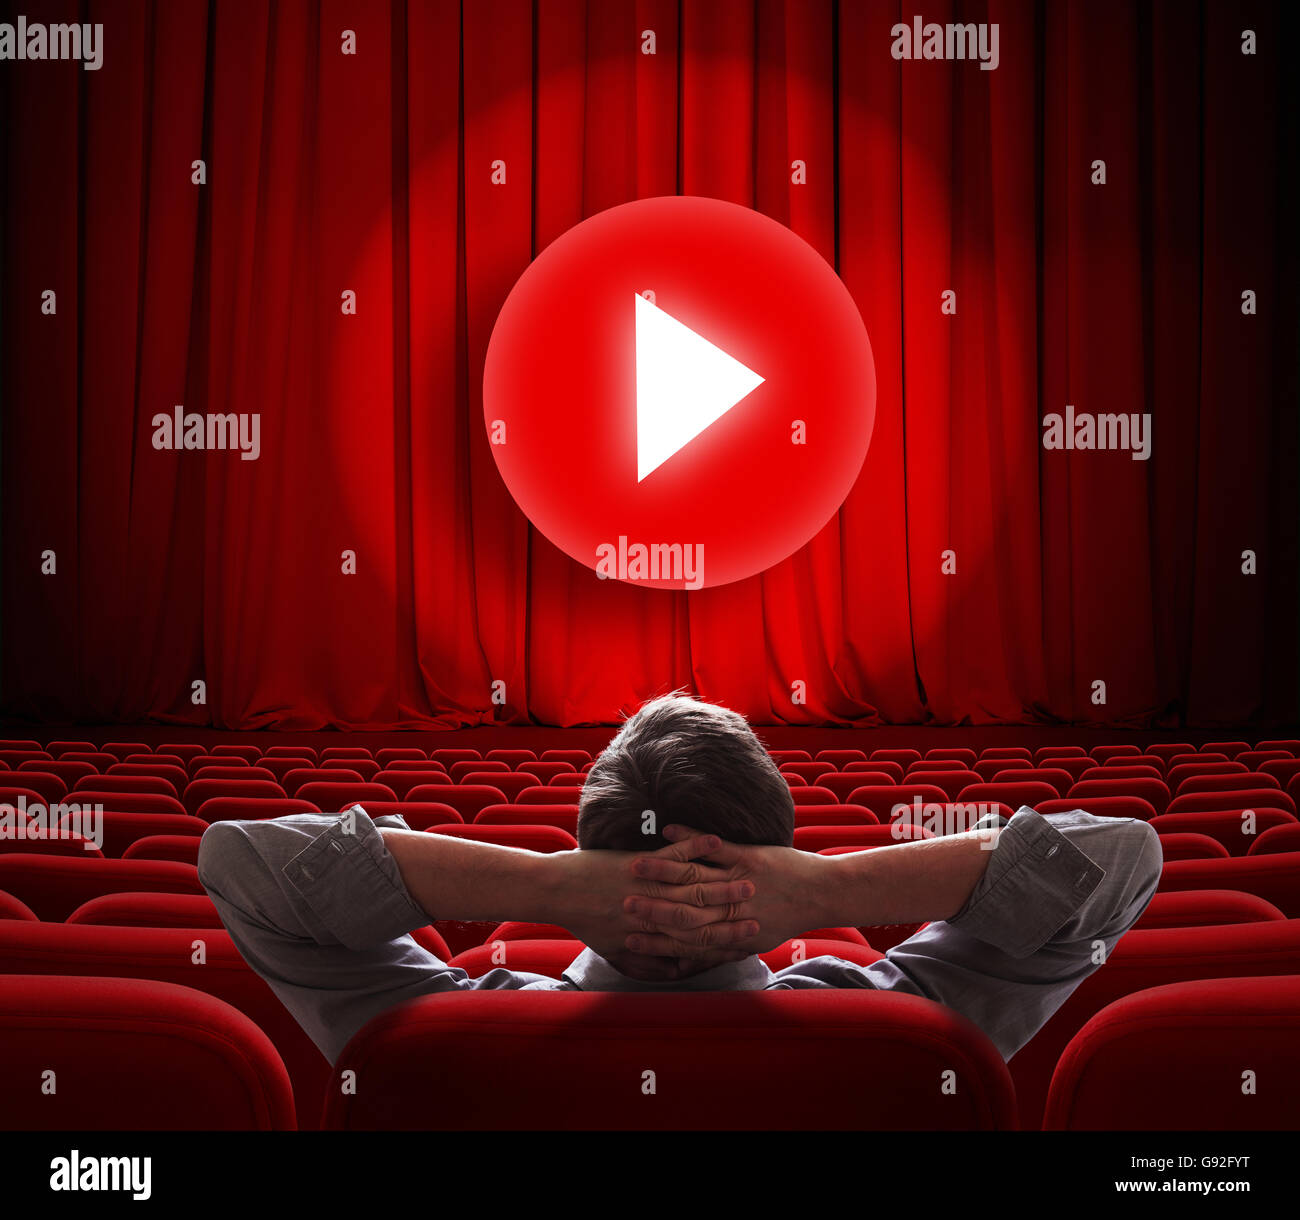 Online-Kinoleinwand mit roten Vorhang und Medien Wiedergabetaste in Mitte Stockfoto